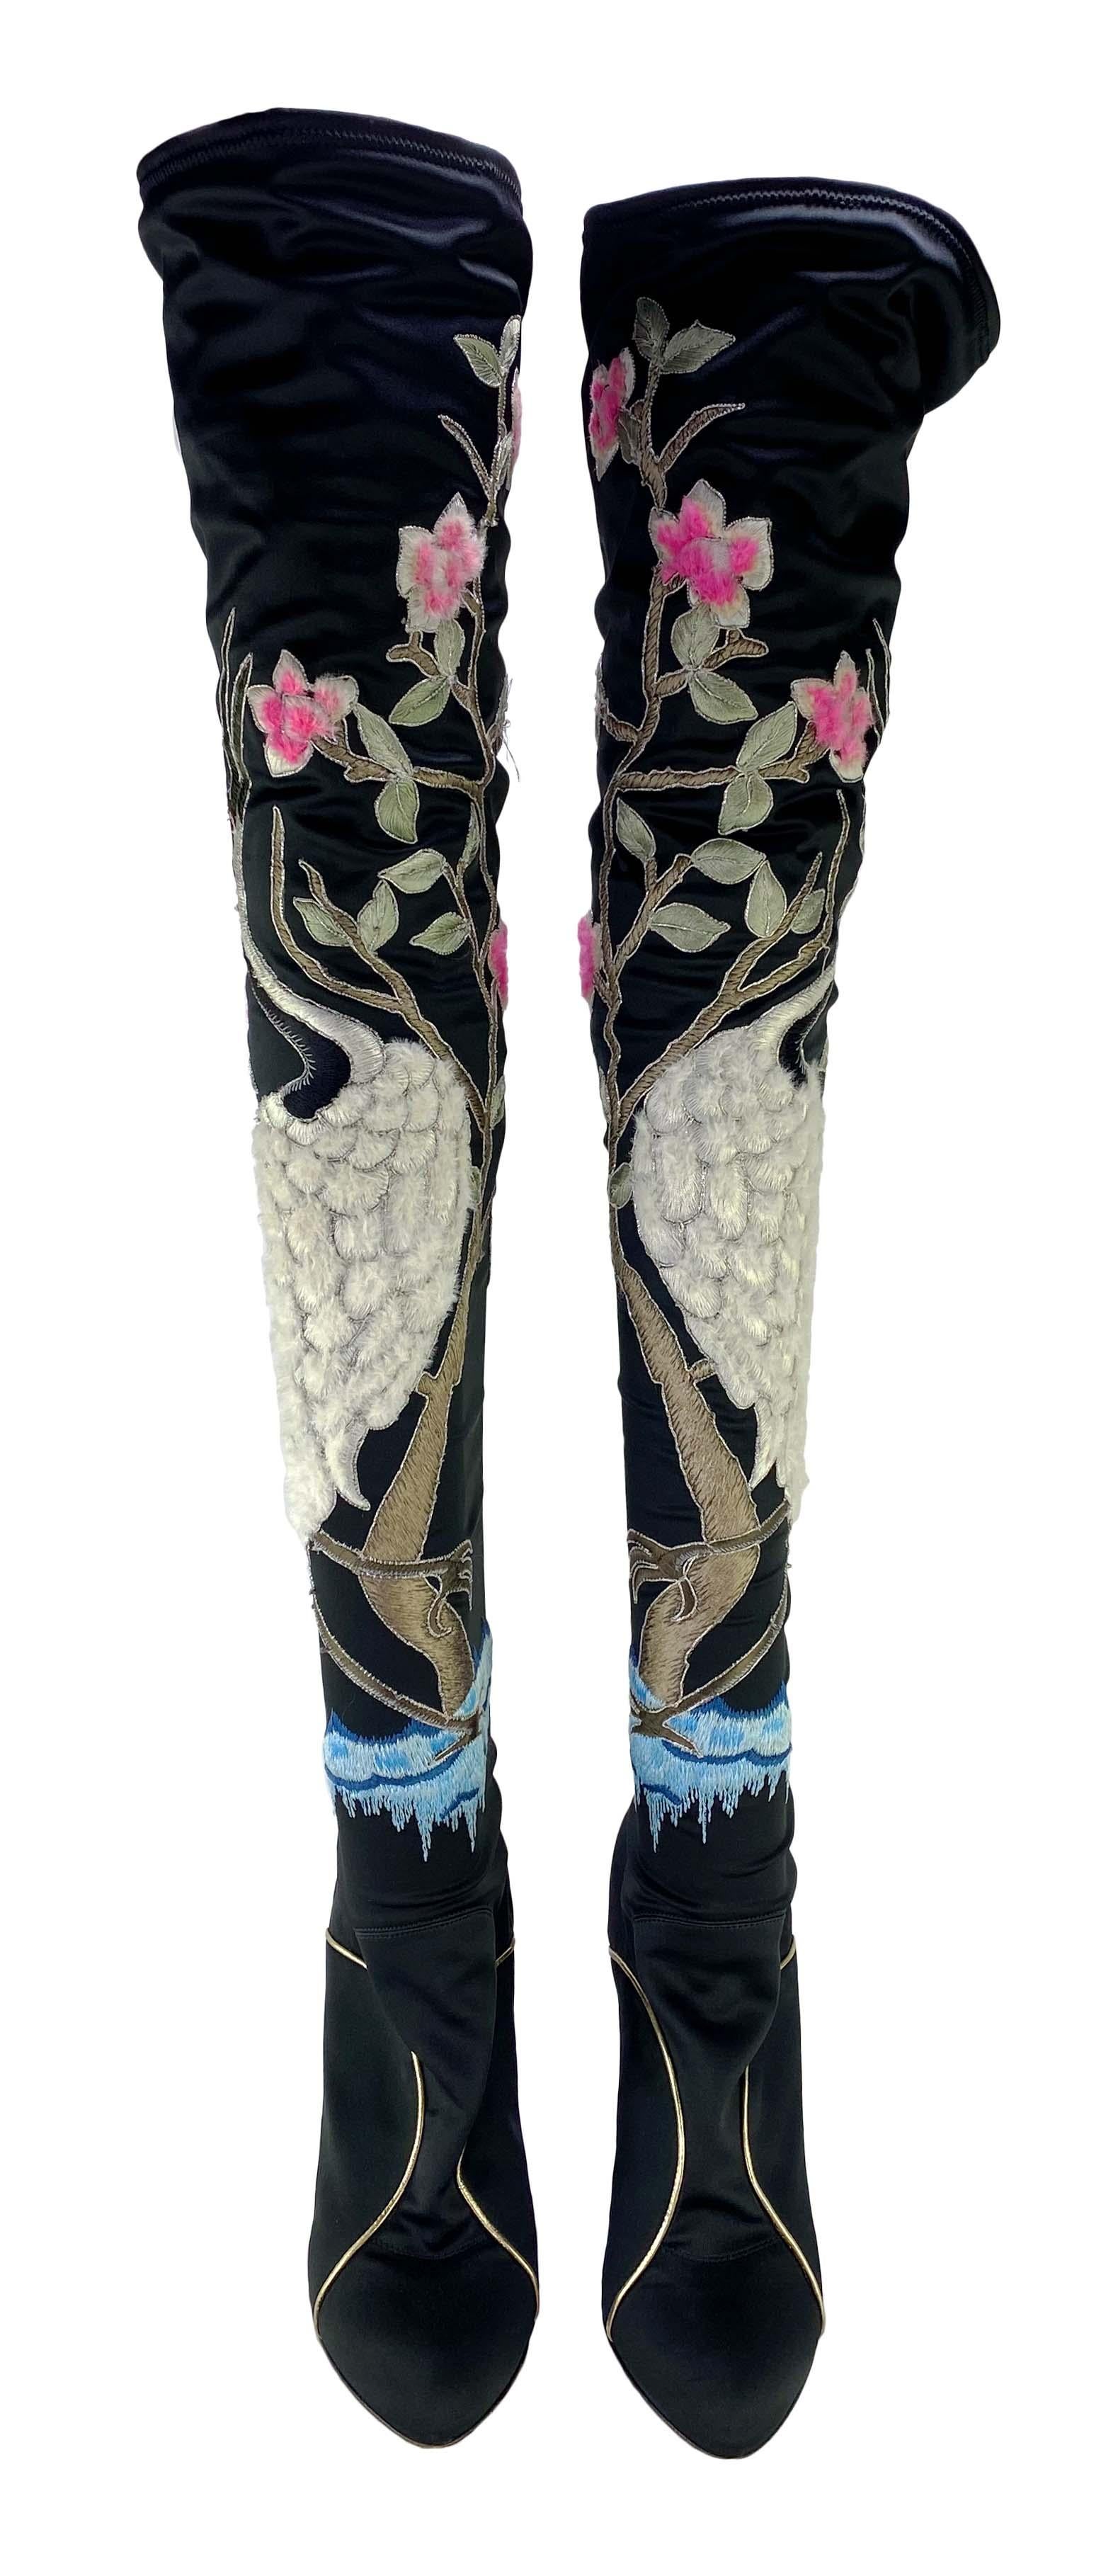 Präsentieren  ein Paar wunderschön bestickte Yves Saint Laurent Rive Gauche Keilstiefel, die einen chinesischen Kranich darstellen, entworfen von Tom Ford. Diese Stiefel sind Teil der Herbst/Winter-Kollektion 2004 und wurden erstmals auf dem